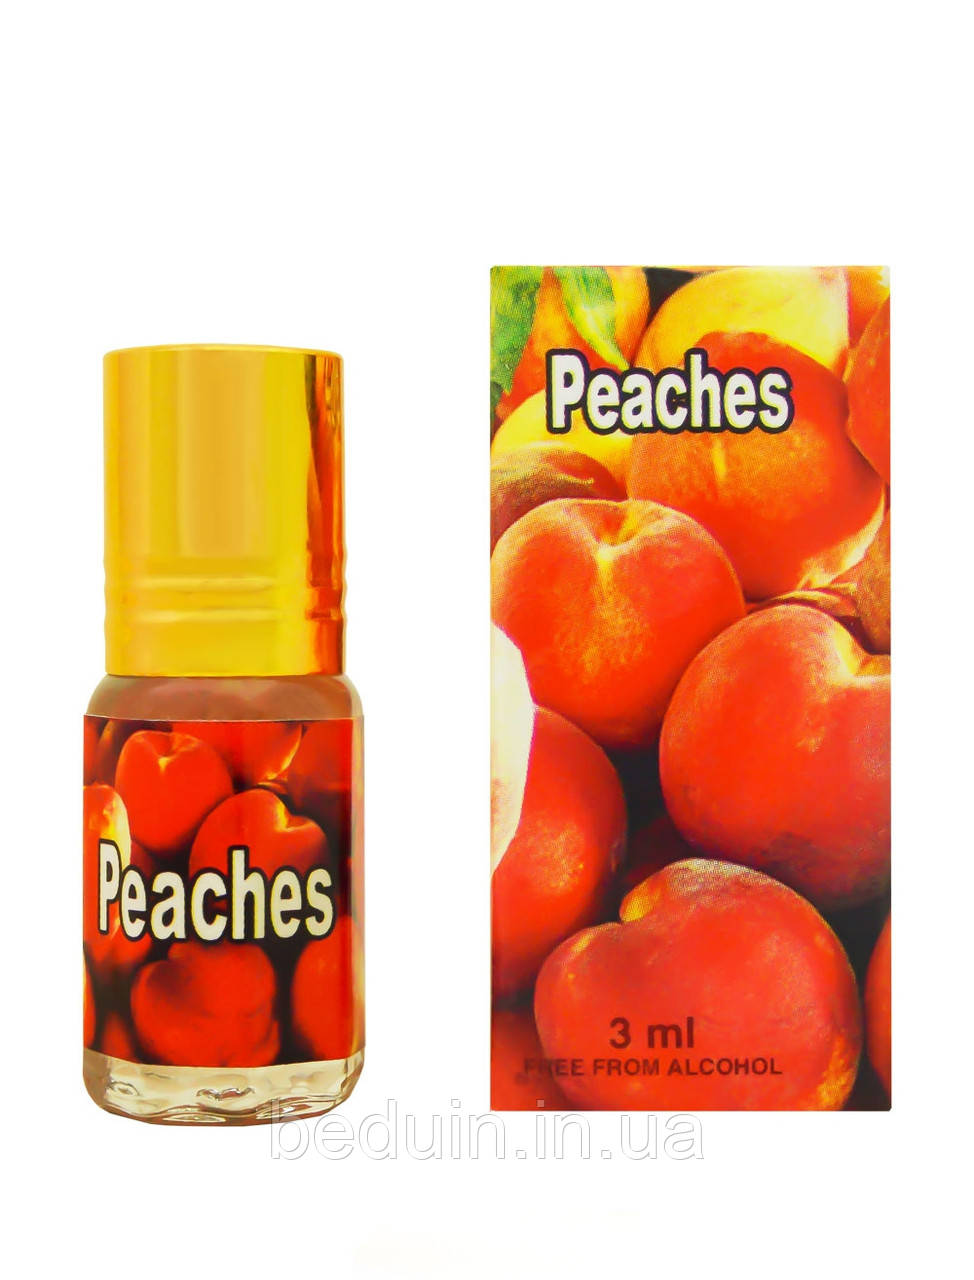 Справжні персикові парфуми Peaches (Піч) від Zahra